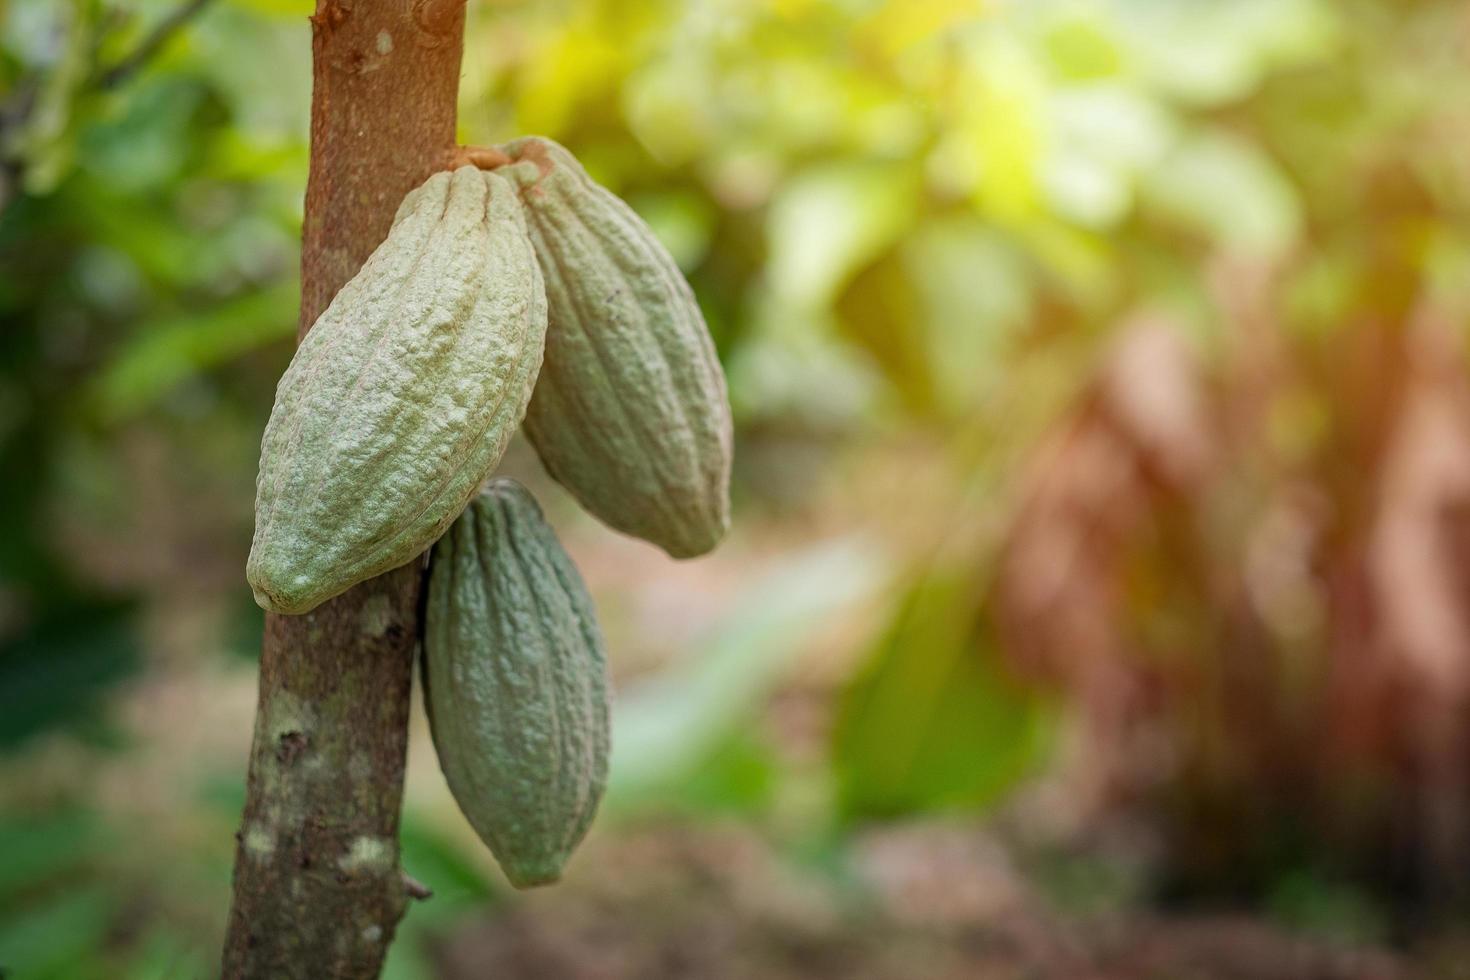 Kakaofrucht auf einem Kakaobaum in einer tropischen Regenwaldfarm. foto